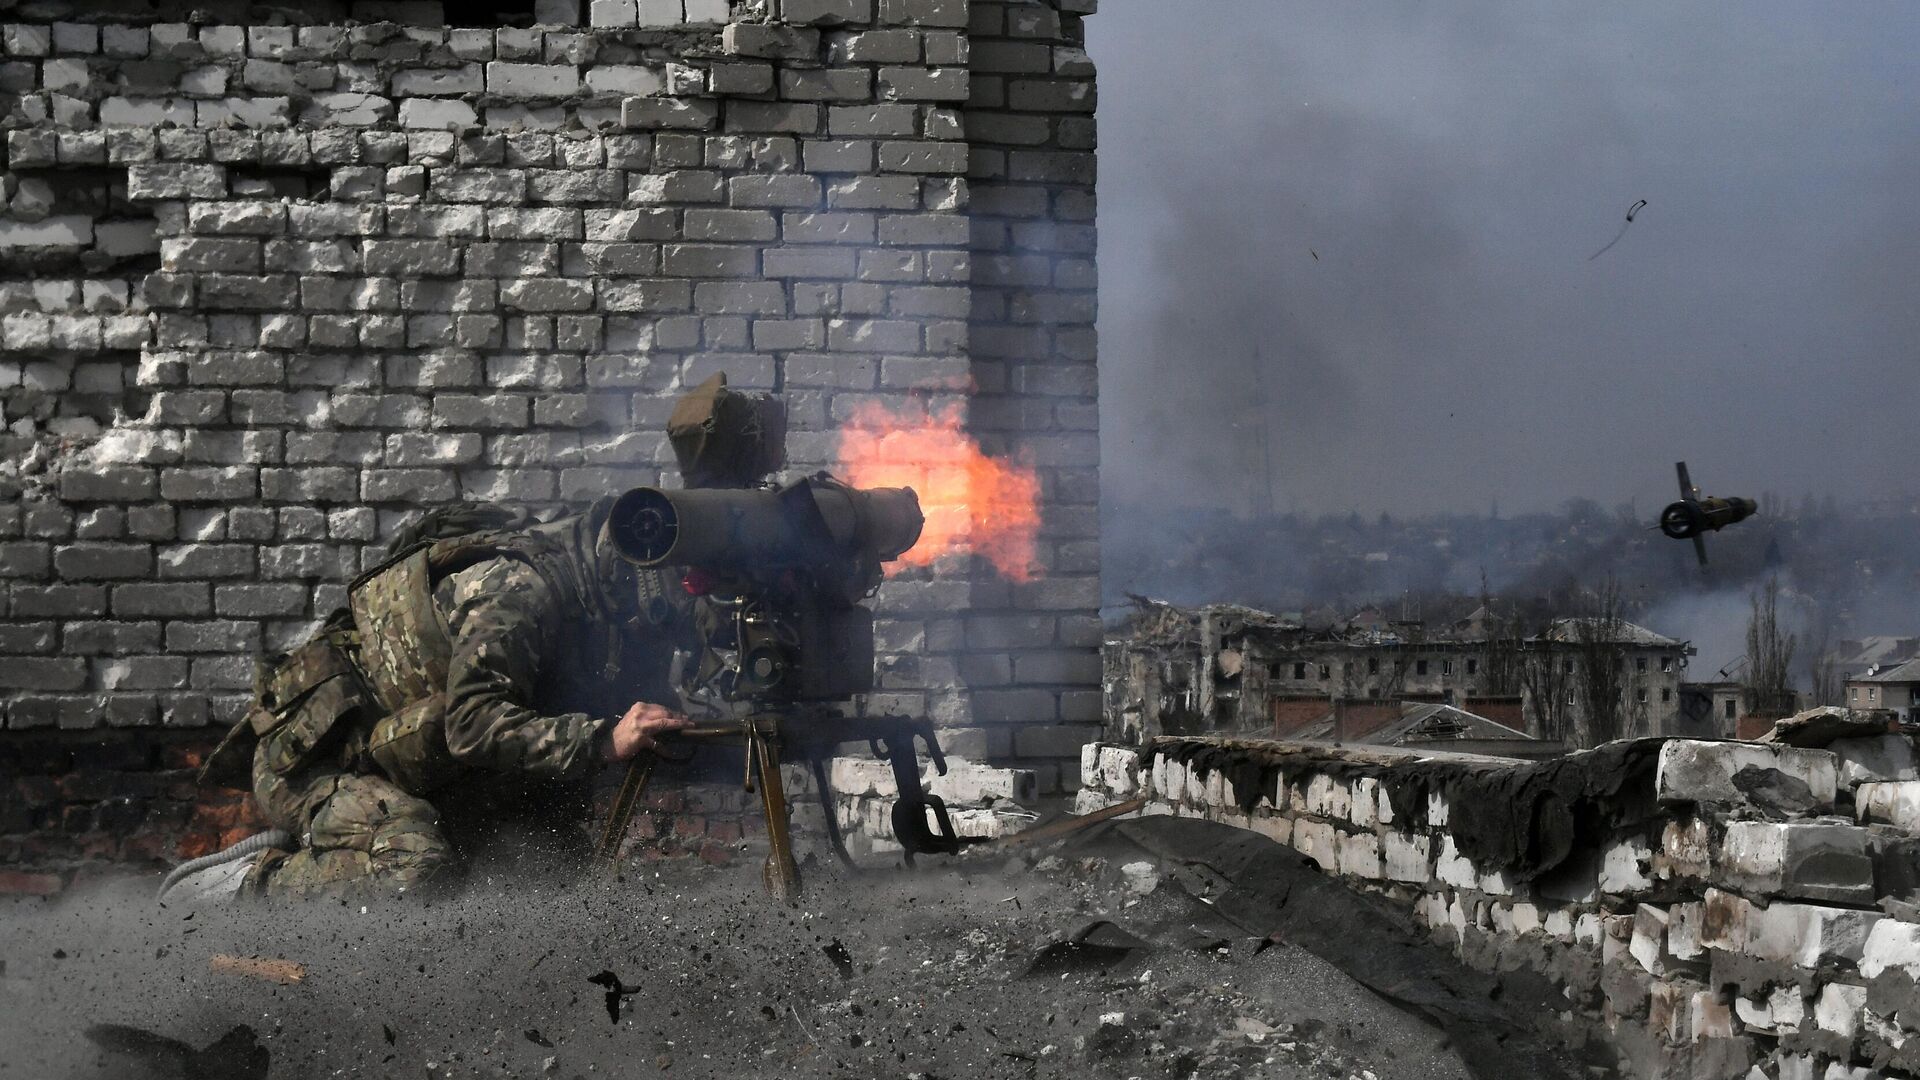 صد هجوم أوكراني في زابوروجي ومروحياتMi-35 تدمر مواقع أوكرانية 